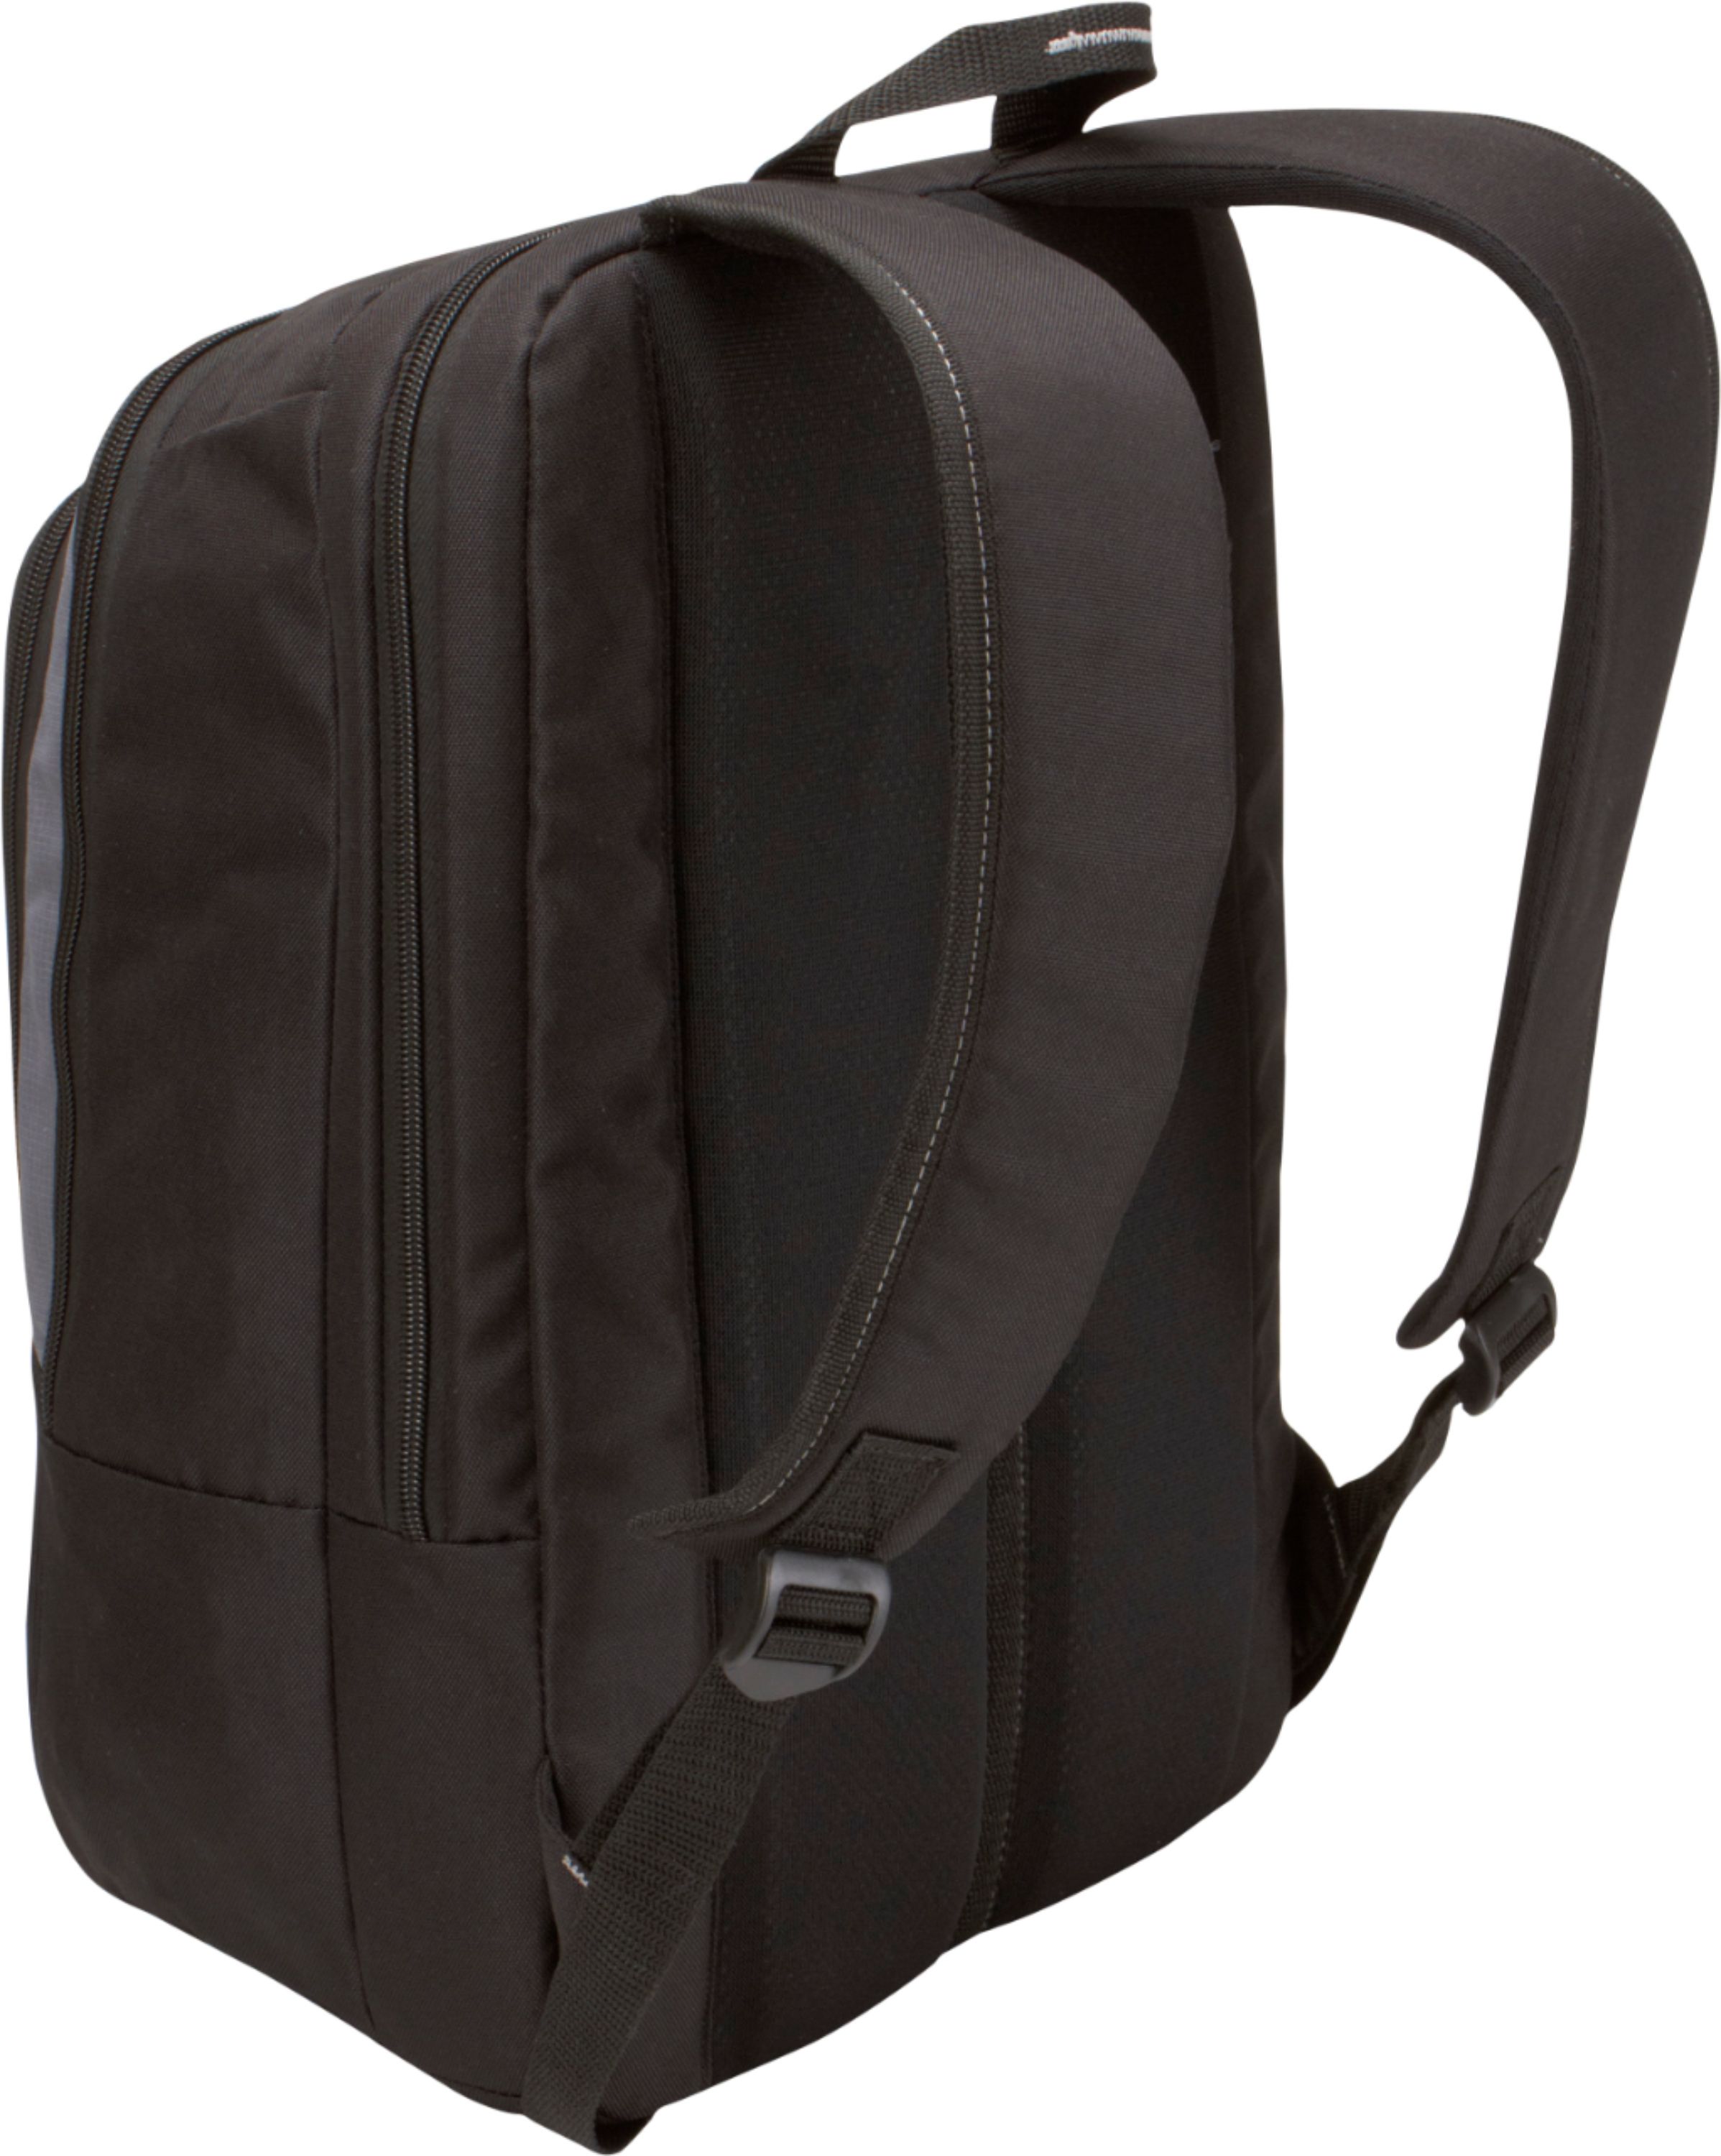 Achievement divorce argument Case Logic Backpack Laptop Case for 17" Laptop Black VNB-217 - Best Buy